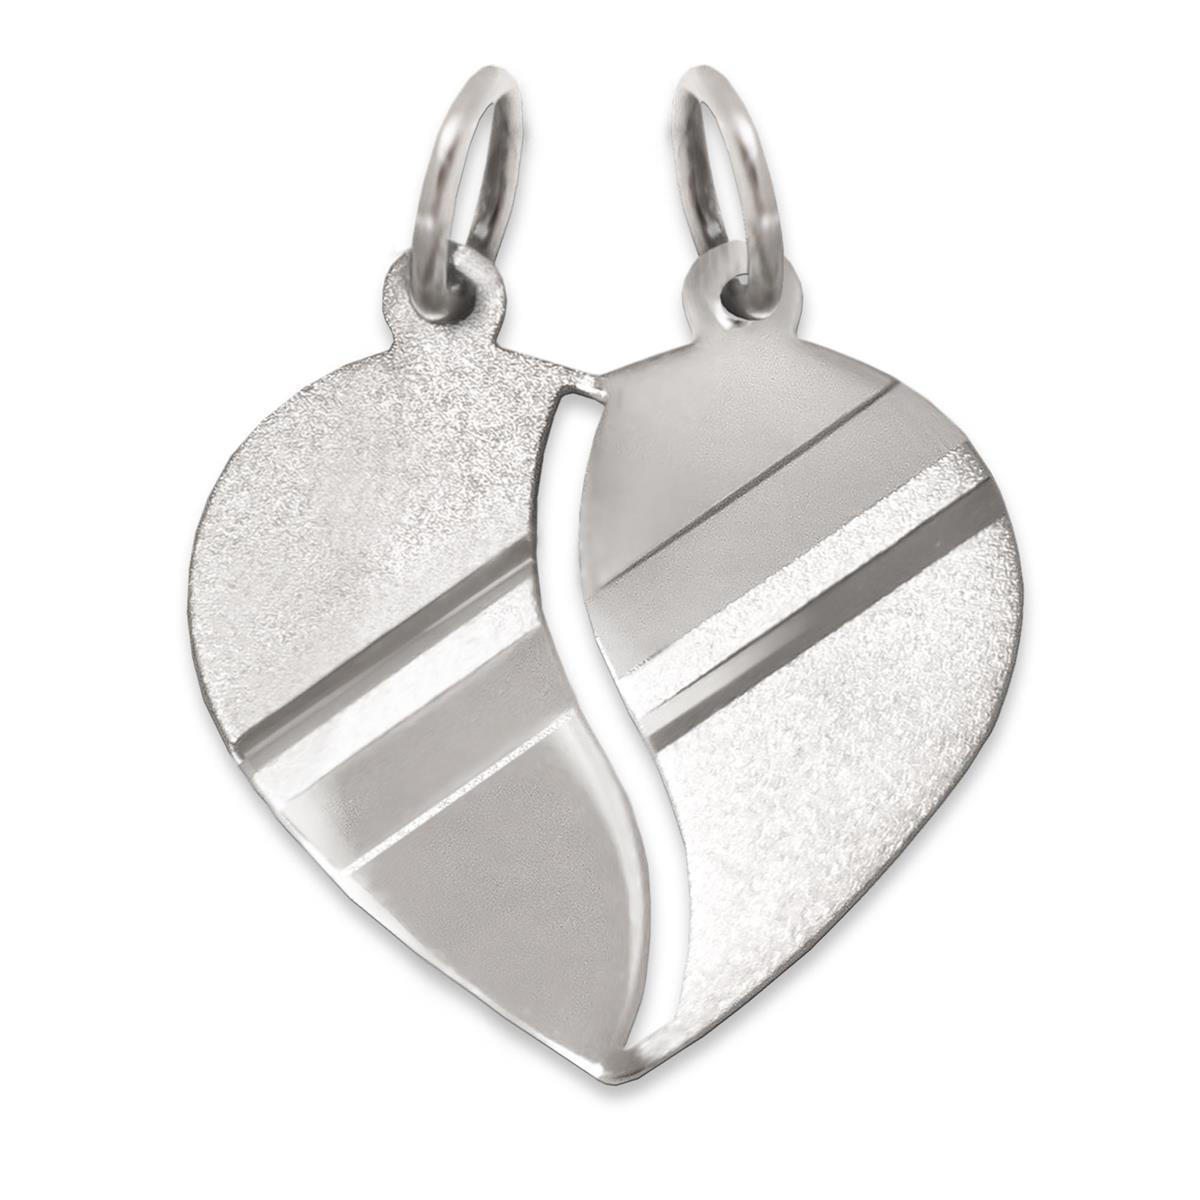 Silberner Anhänger Herz 16 mm teilbar matt und glänzend diamantiert mit schrägen Linien STERLING SILBER 925